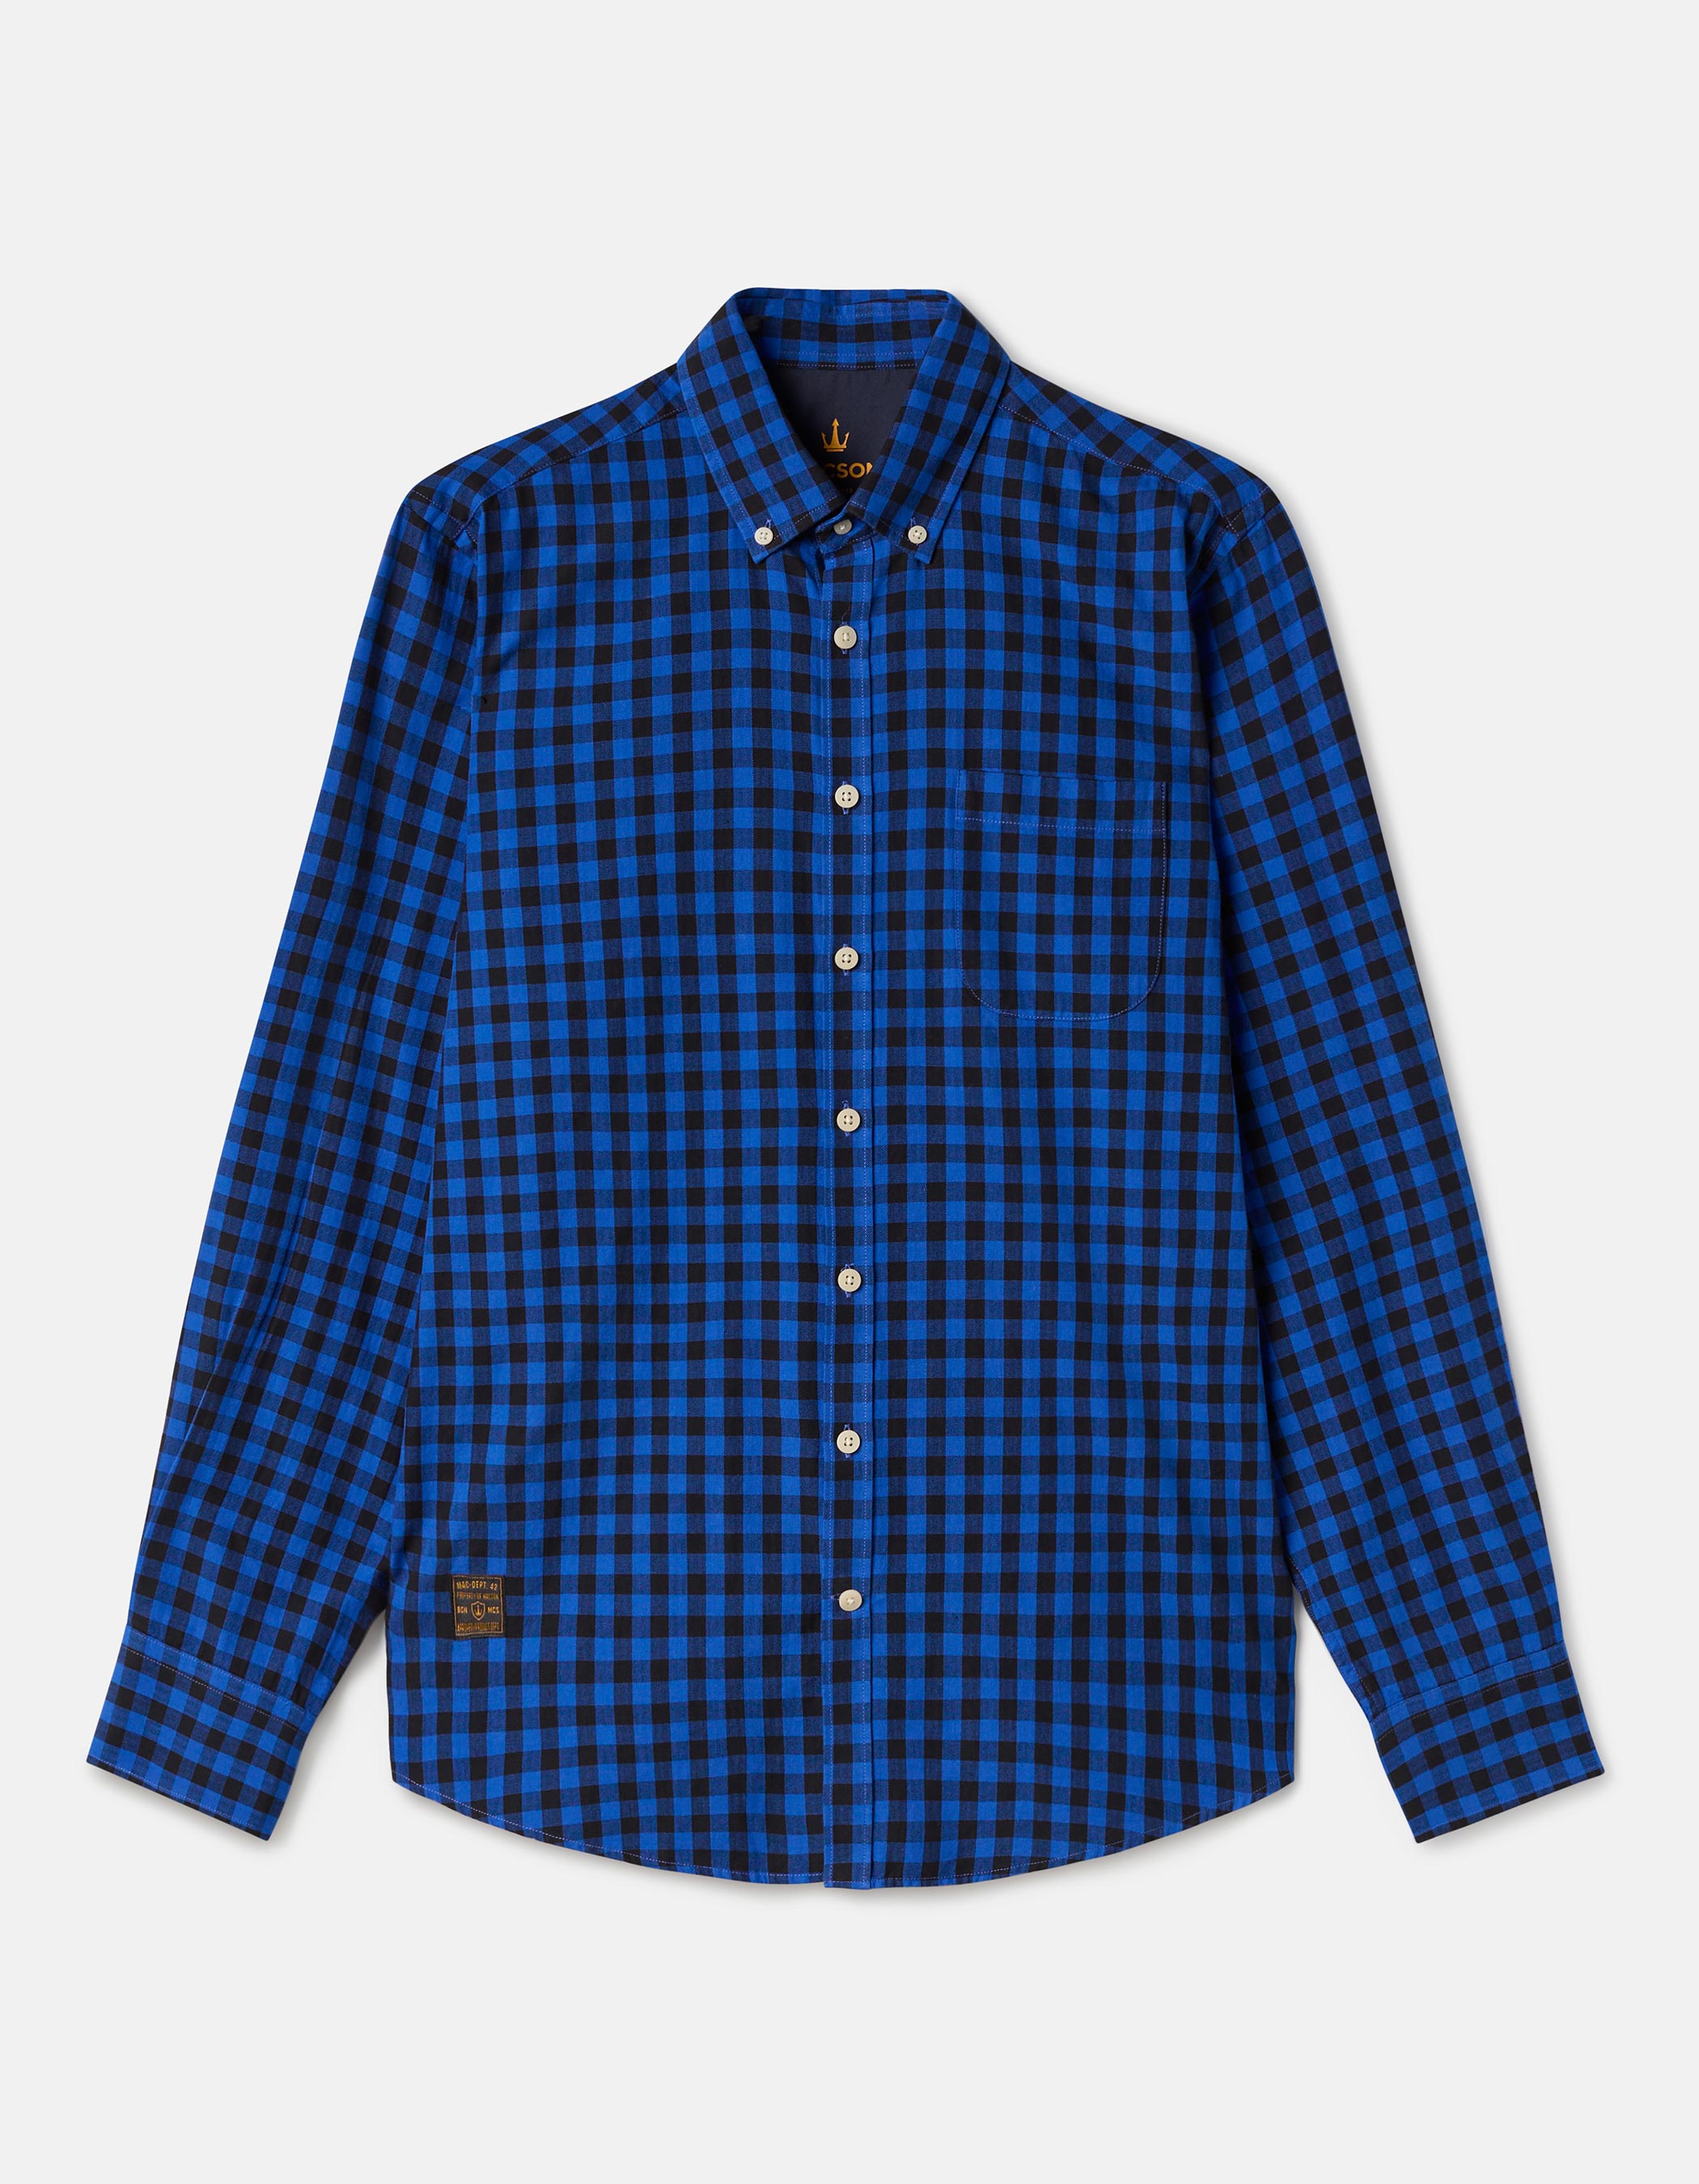 Camisa Regular em Algodão com Estampa Xadrez Vichy Azul